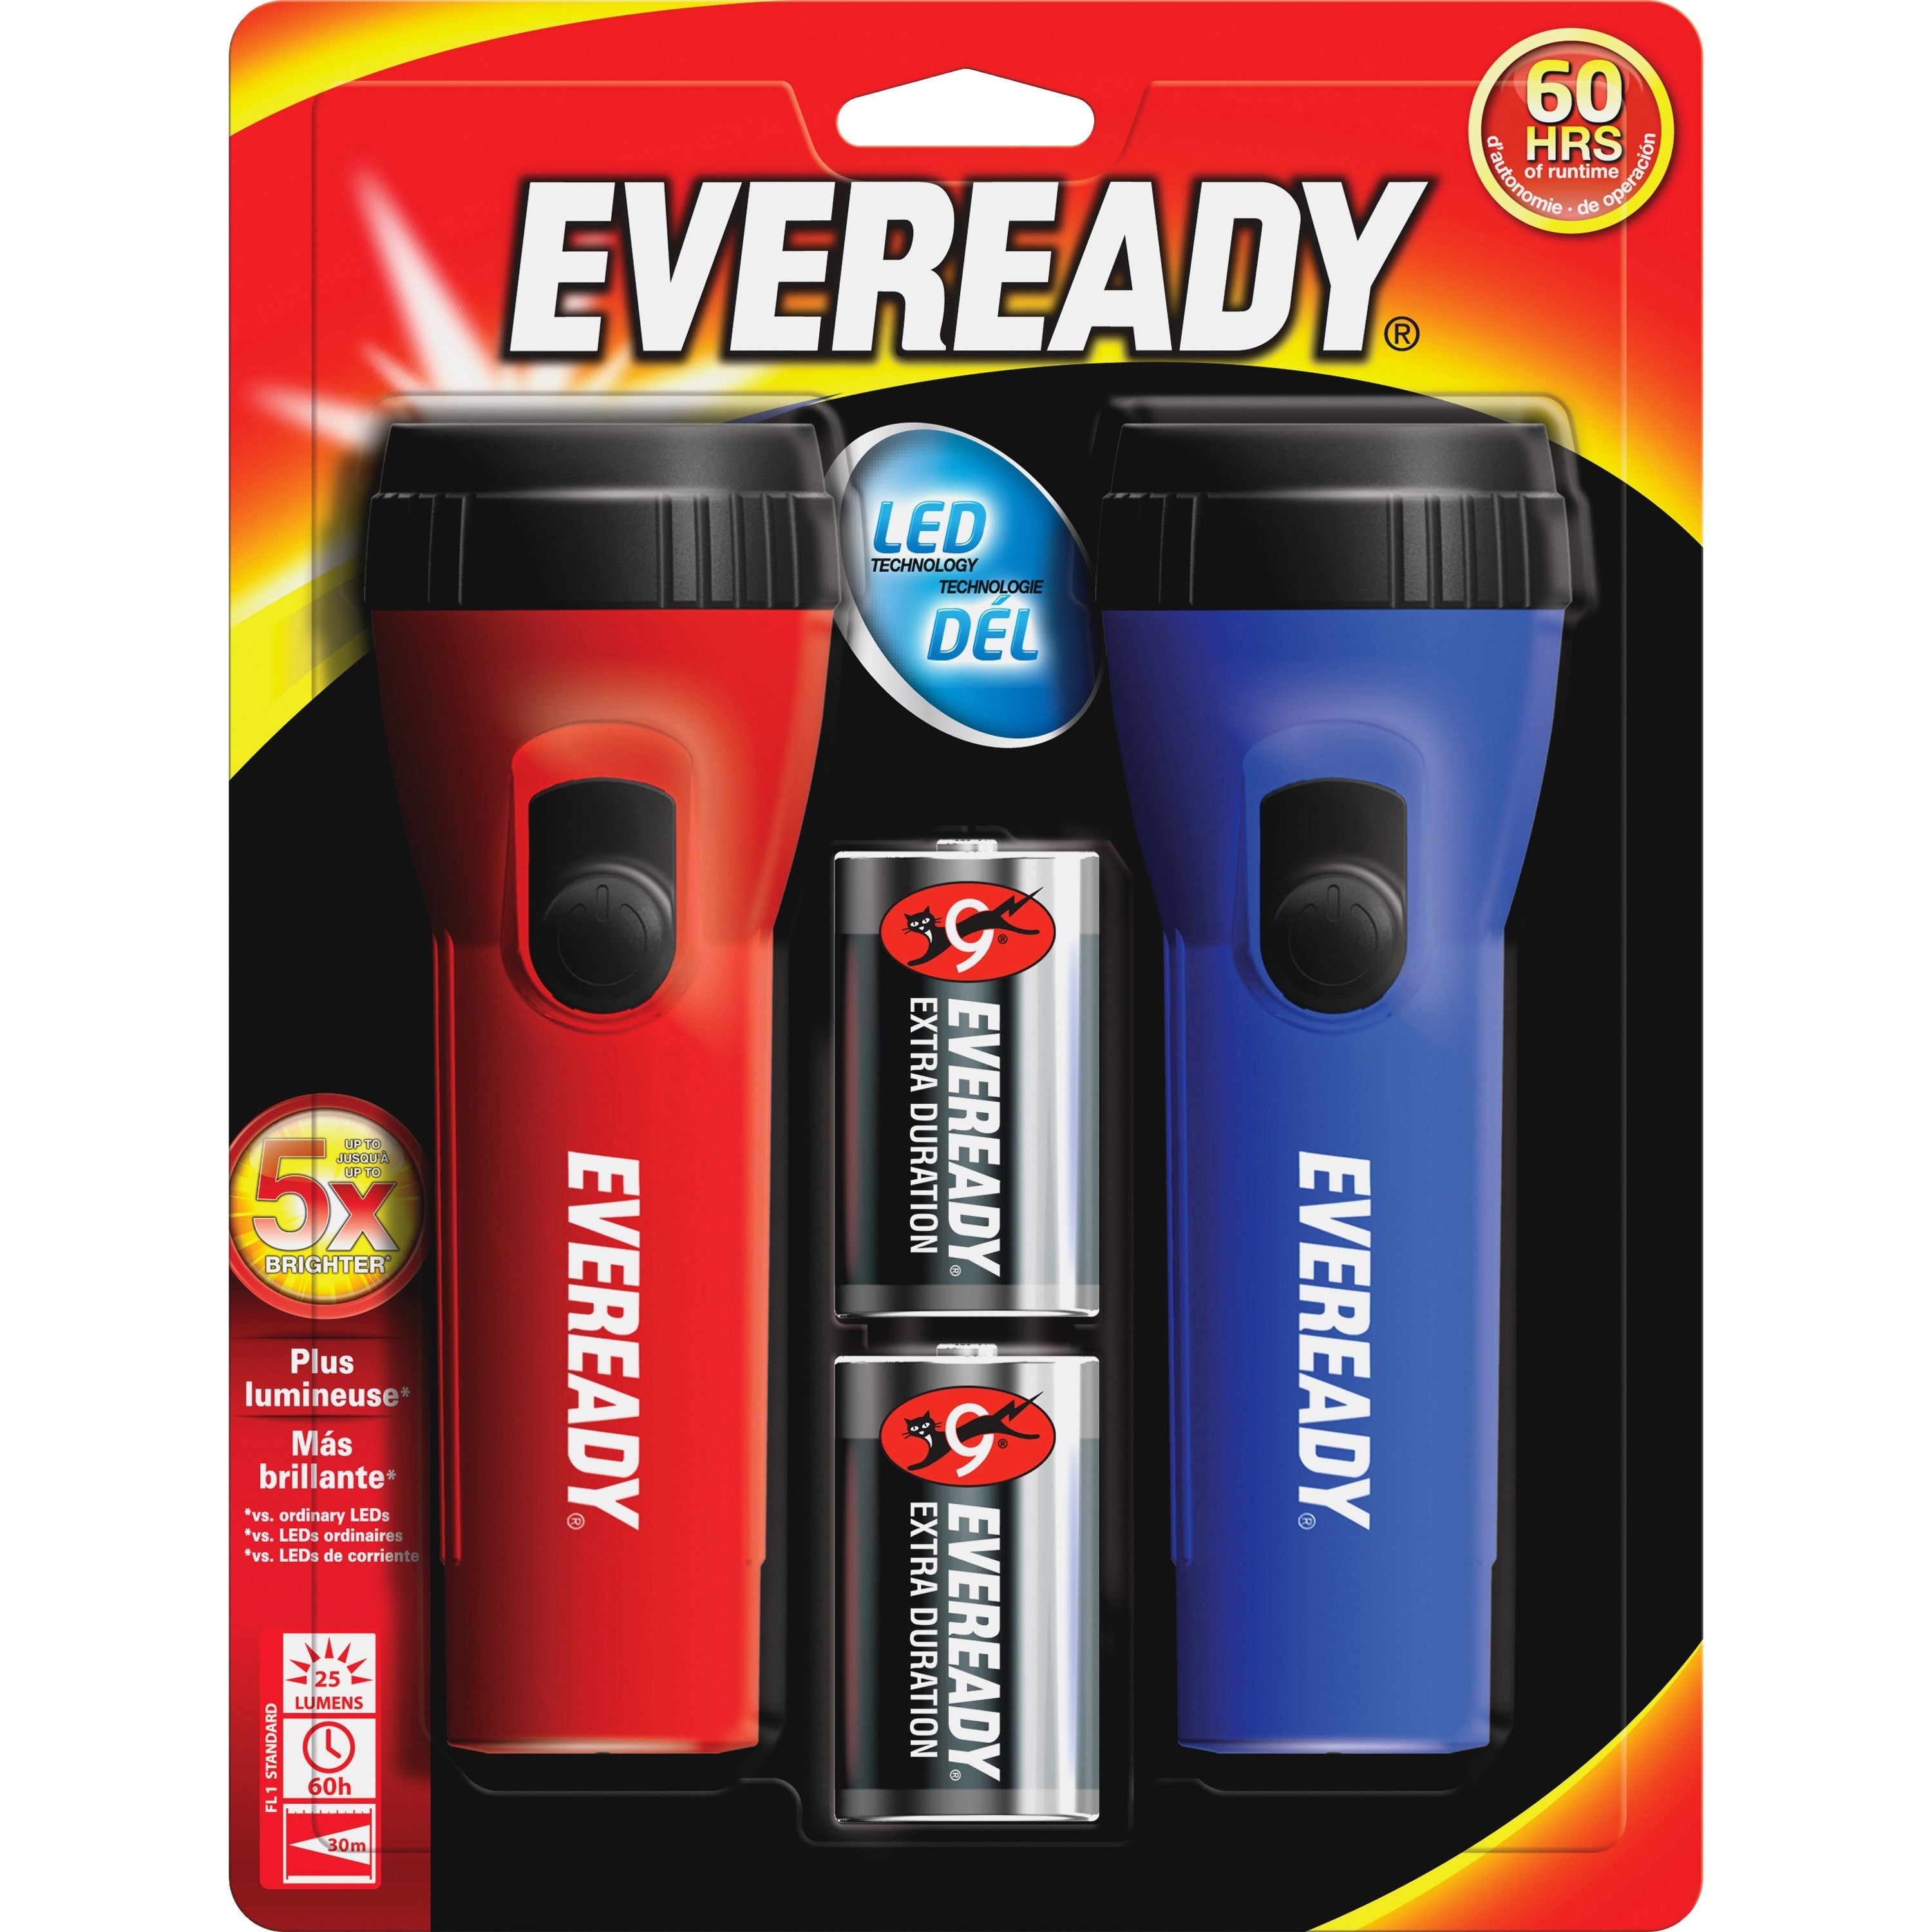 Eveready LED Economy Flashlight - LED - 9 lm Lumen - 1 x D - Polypropylene - Blue, Red - 